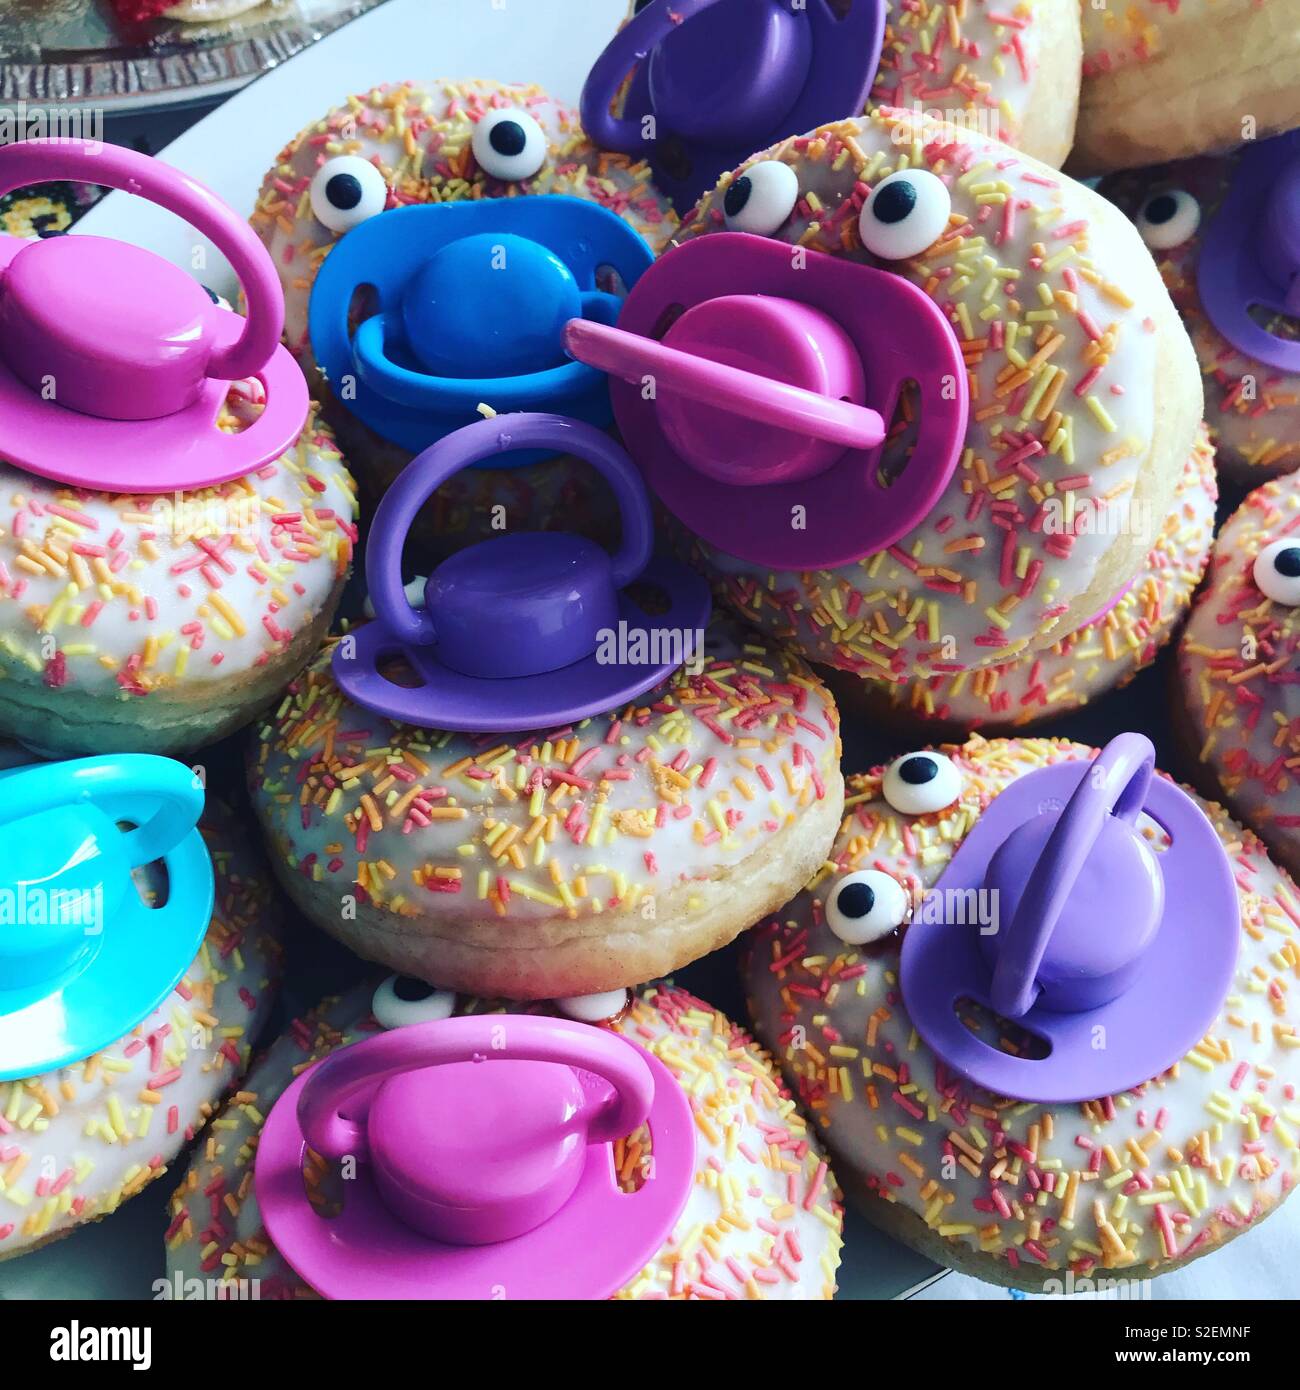 Baby Shower Ideas; Donuts mit Dummies Stockfotografie - Alamy